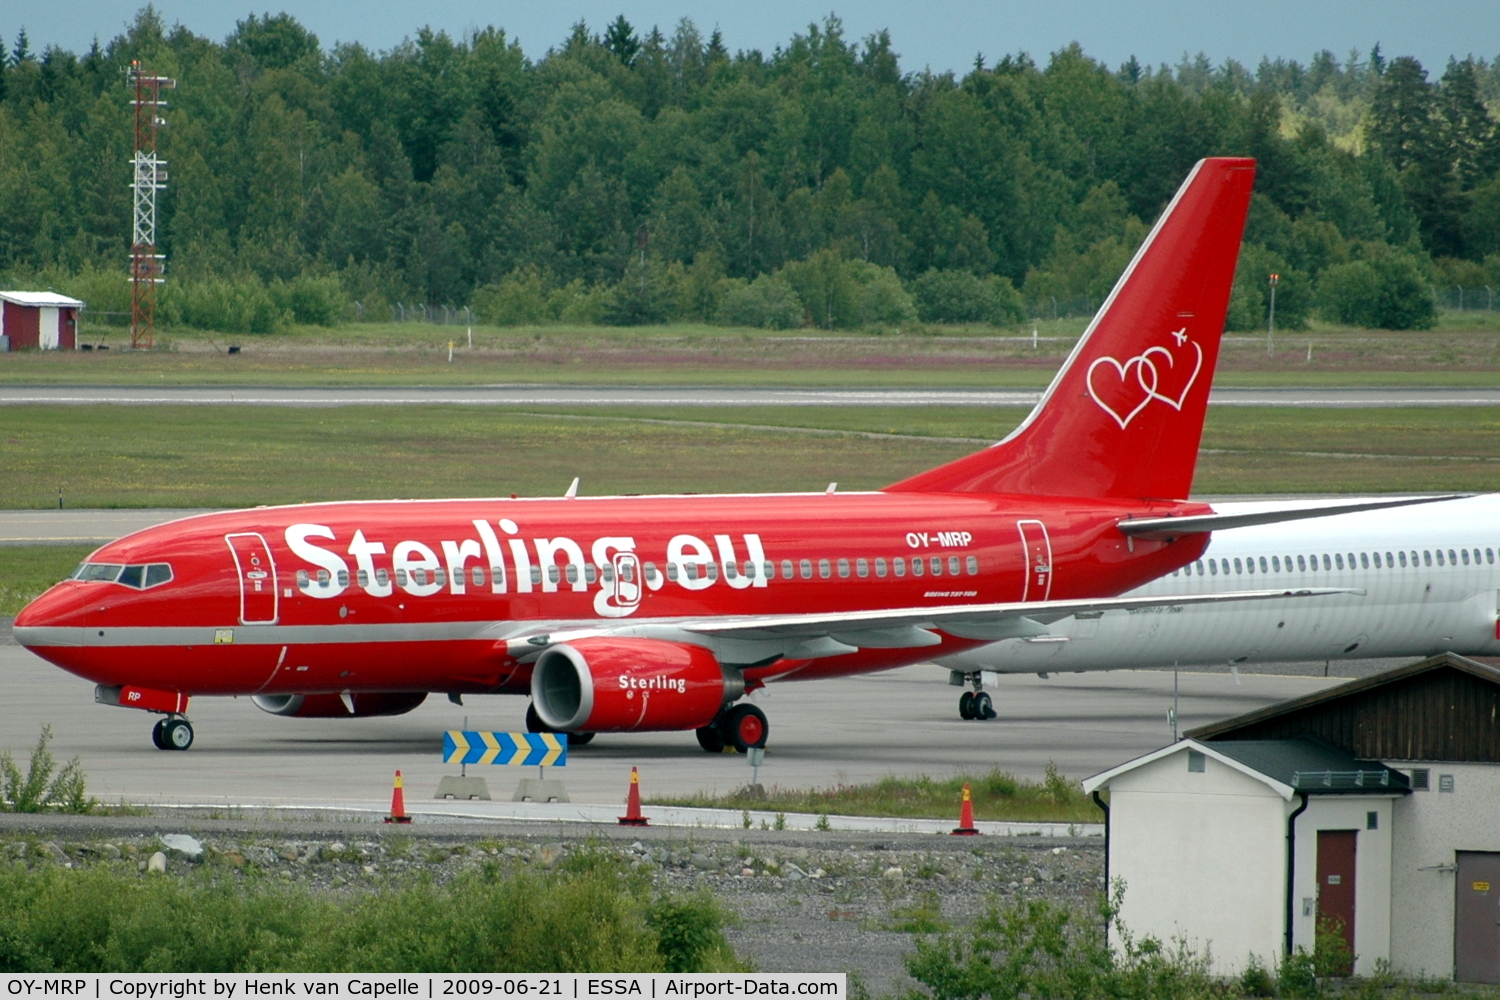 OY-MRP, 2007 Boeing 737-7K9 C/N 34401, 737-700 standing idle at arlanda after Sterling went bankrupt.